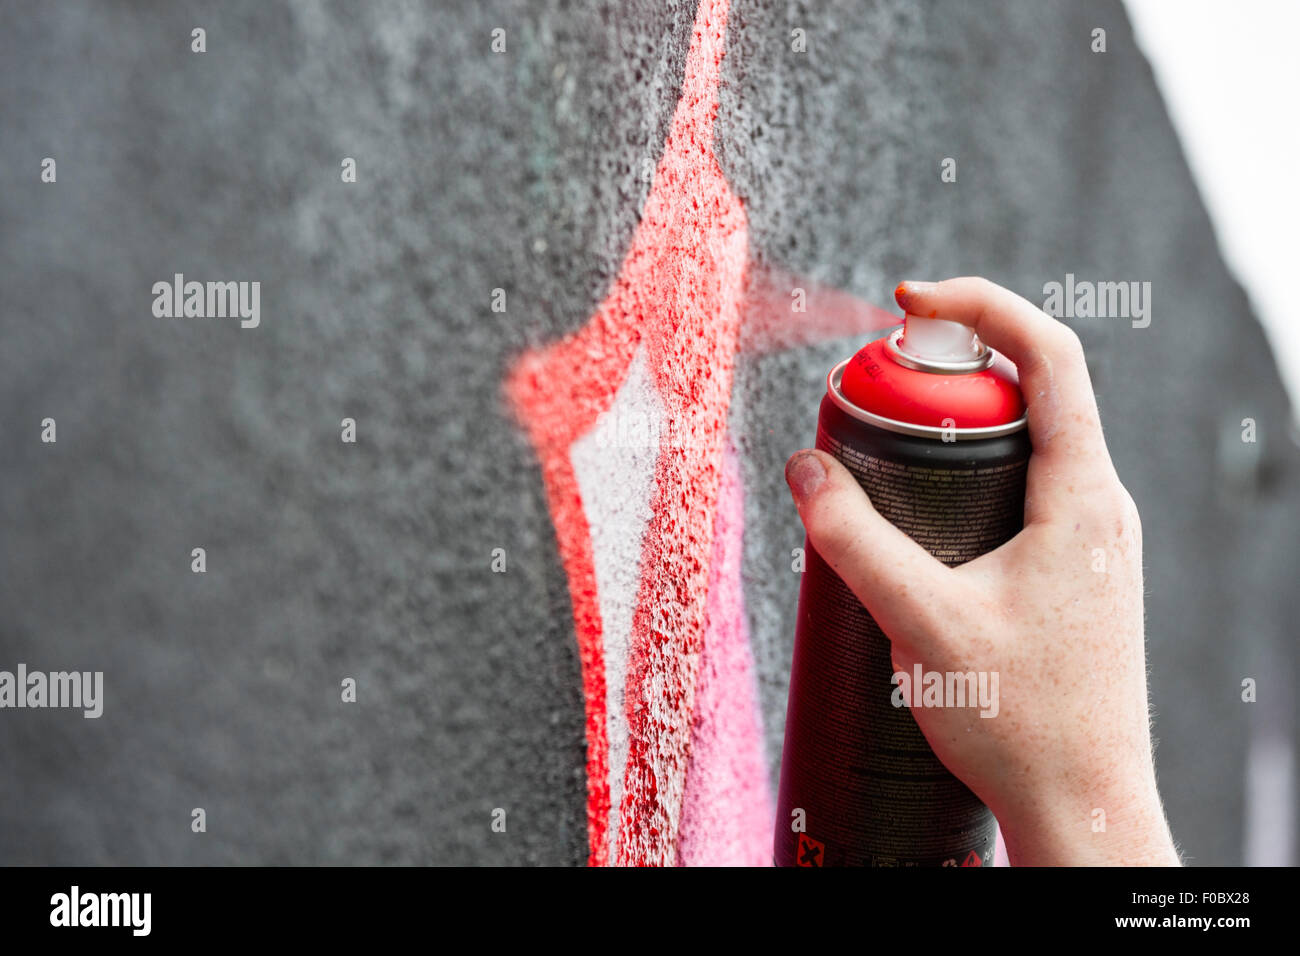 Peintre Graffity dessiner une image sur le mur, détail Banque D'Images